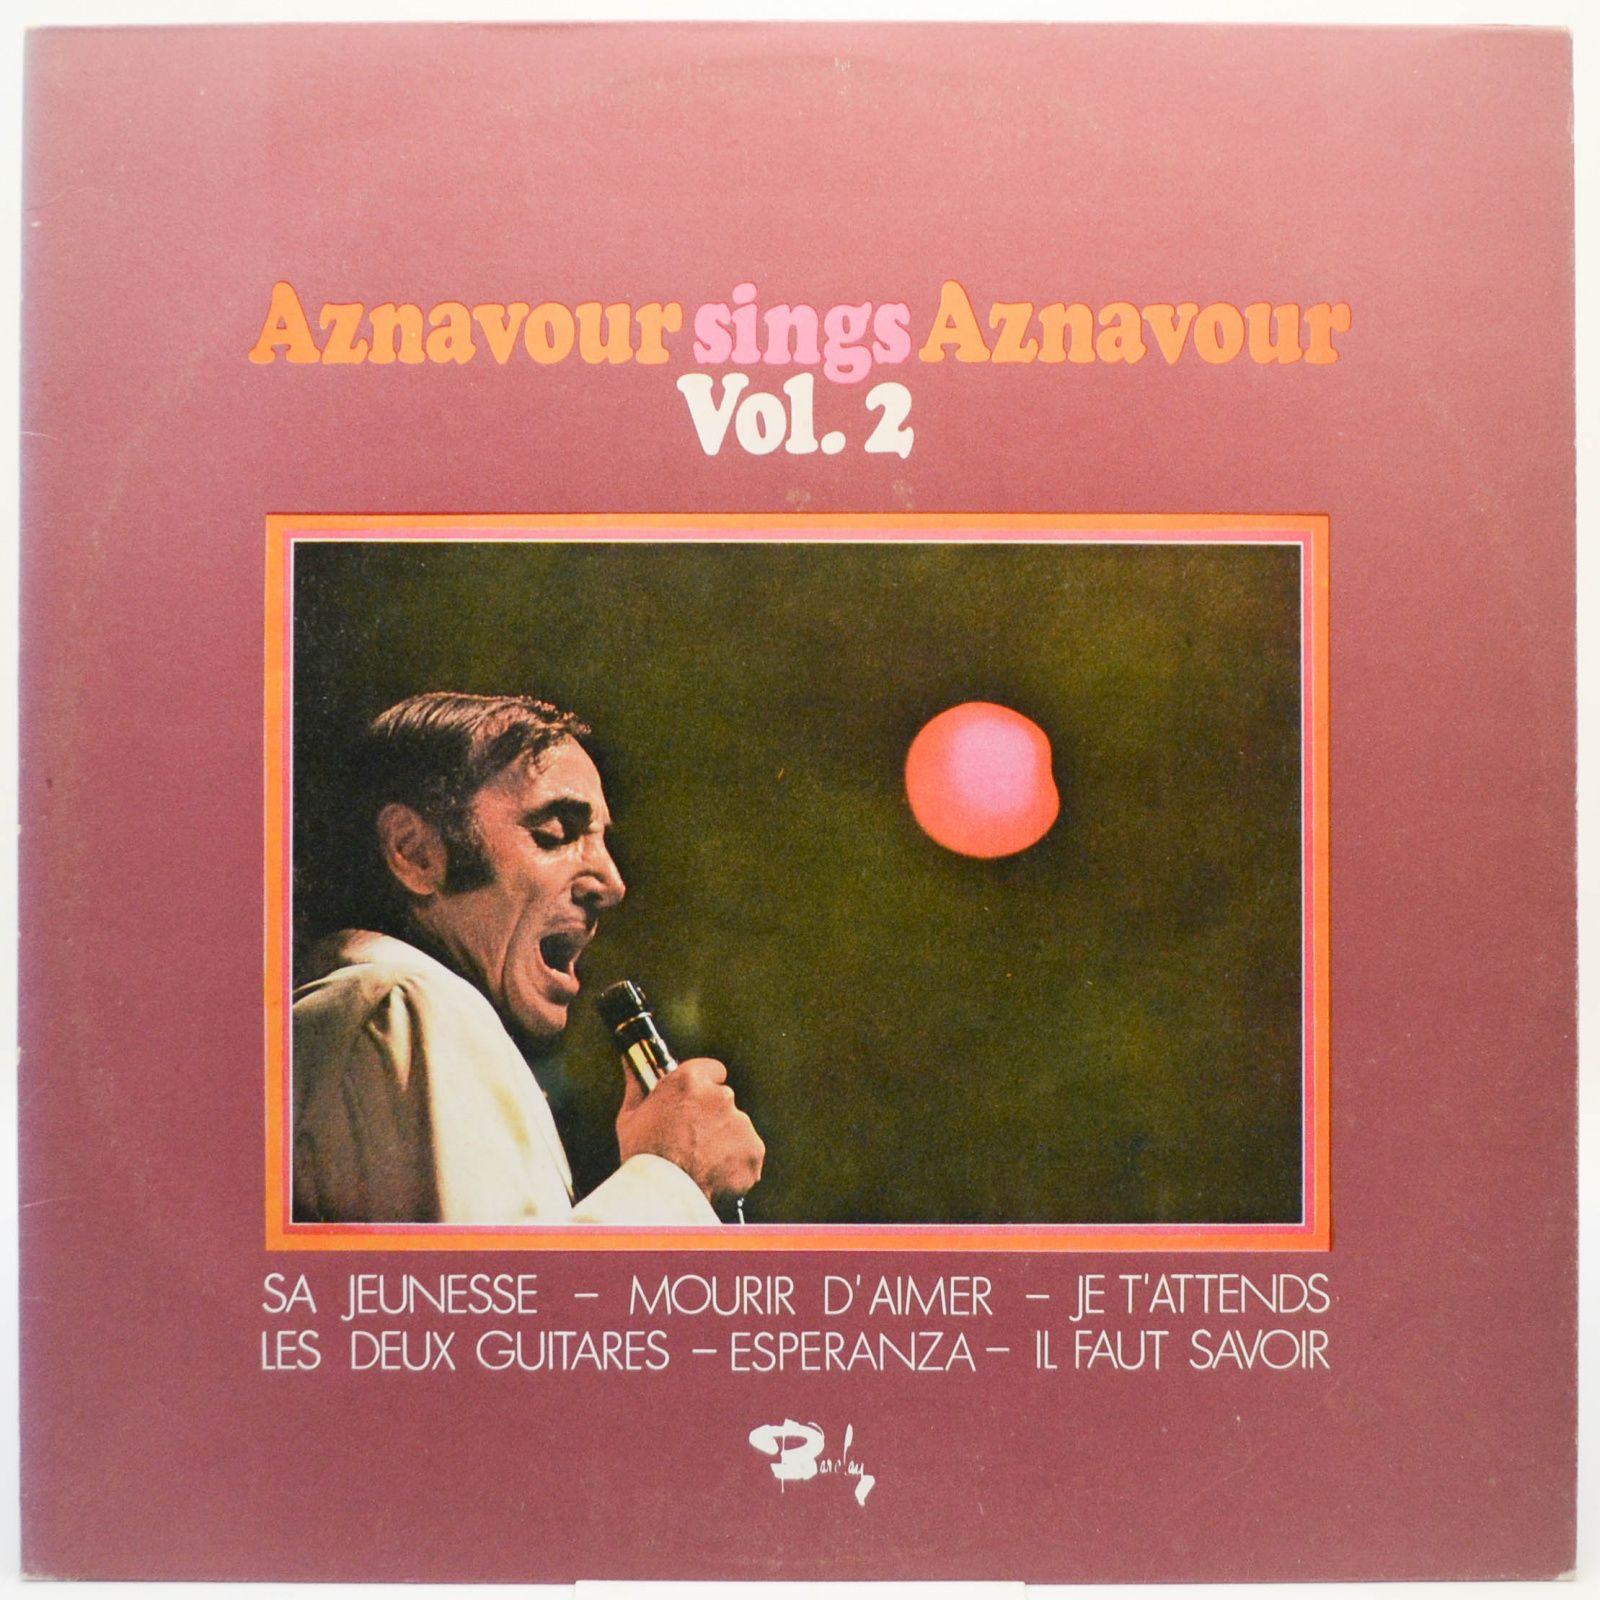 Charles Aznavour — Aznavour Sings Aznavour Vol. 2, 1971